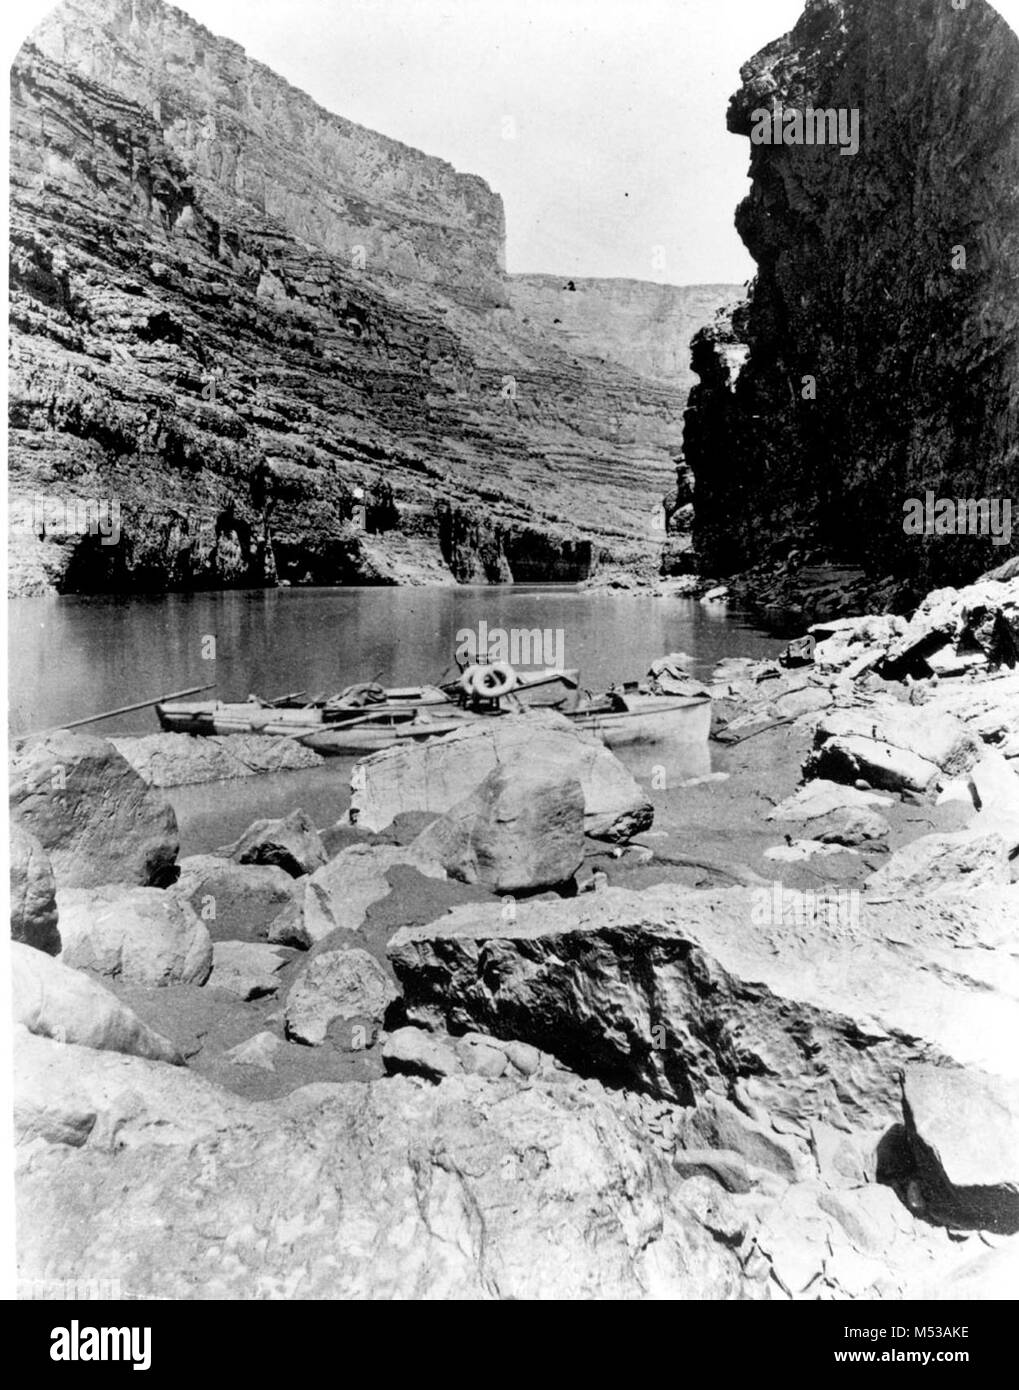 Boote von POWELL'S ZWEITE EXPEDITION IN DEN Marble Canyon. Sessel und leben die LICHTFORMEN. CIRCA 1872. Grand Canyon Nat Park historische Fluss Foto. Stockfoto